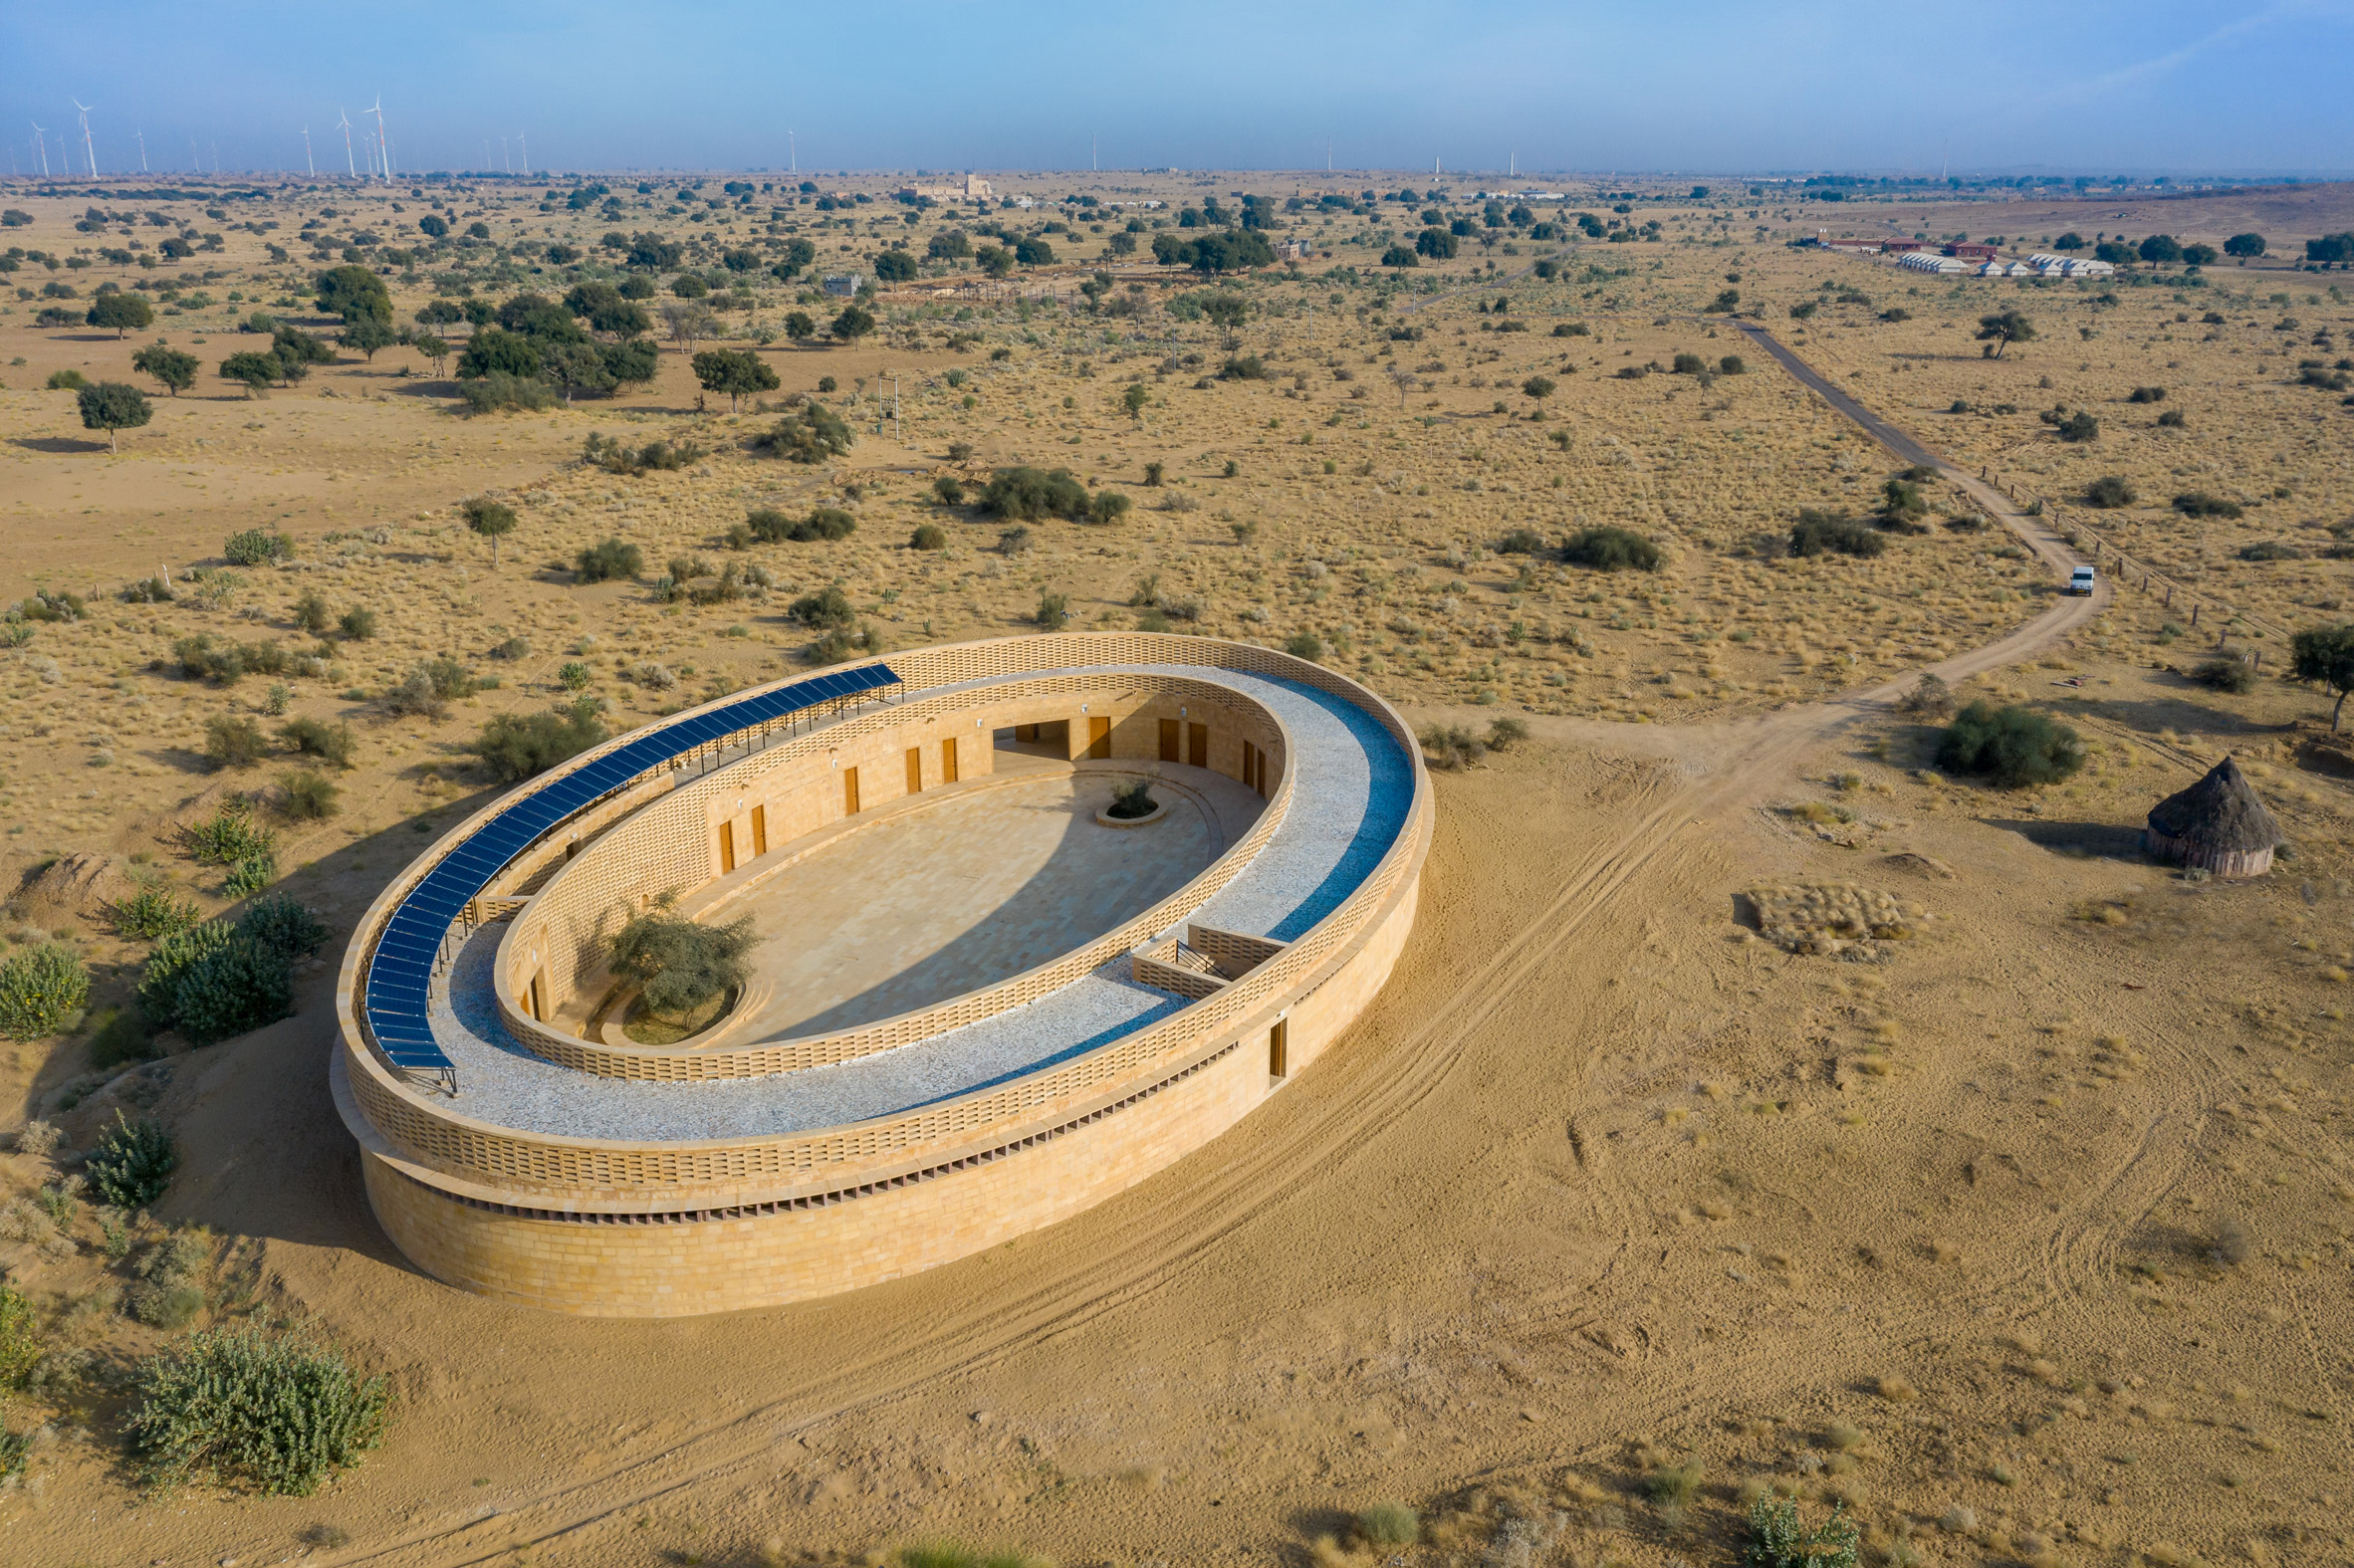 Arquiteta cria uma escola para meninas na Índia no meio do deserto!